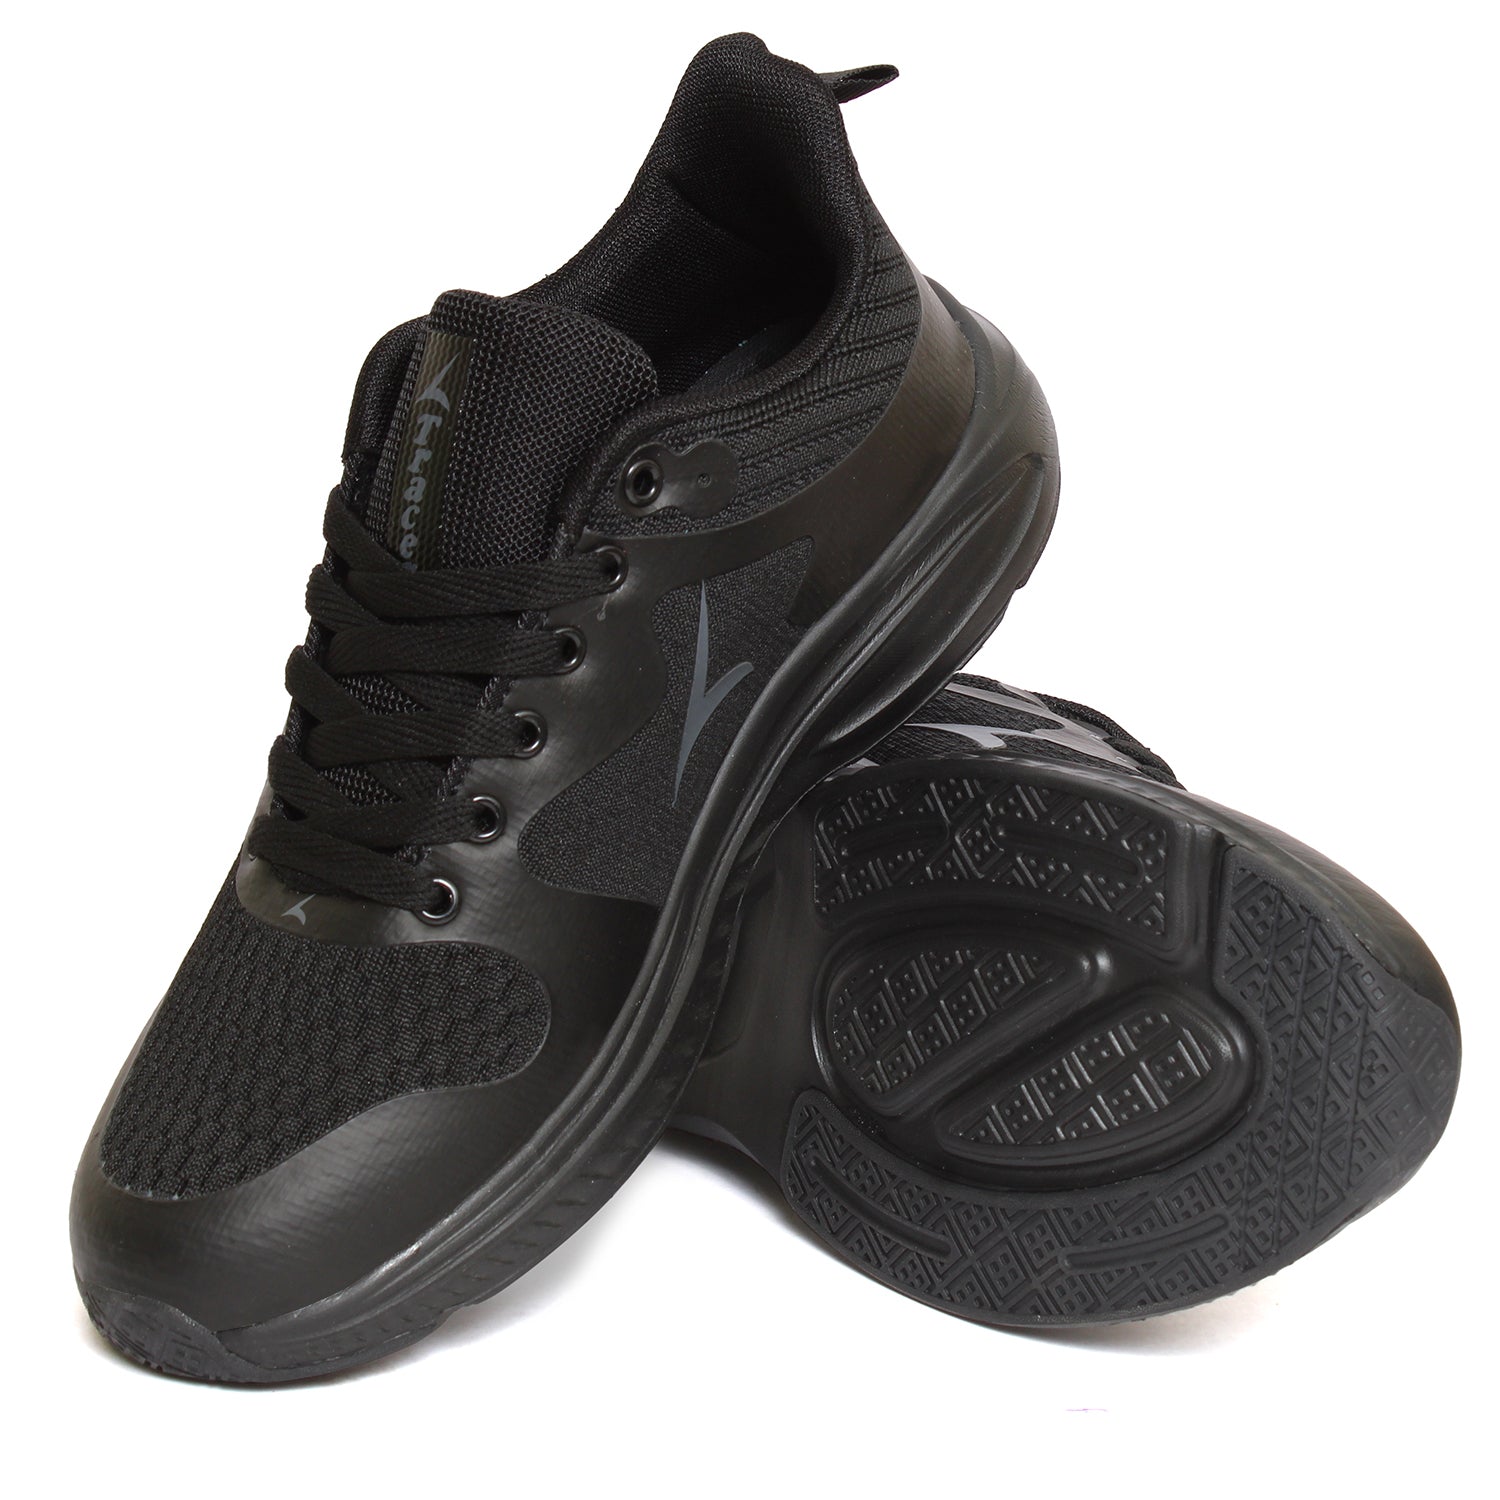 Tracer Steady 2347 Sneaker's for Men Black